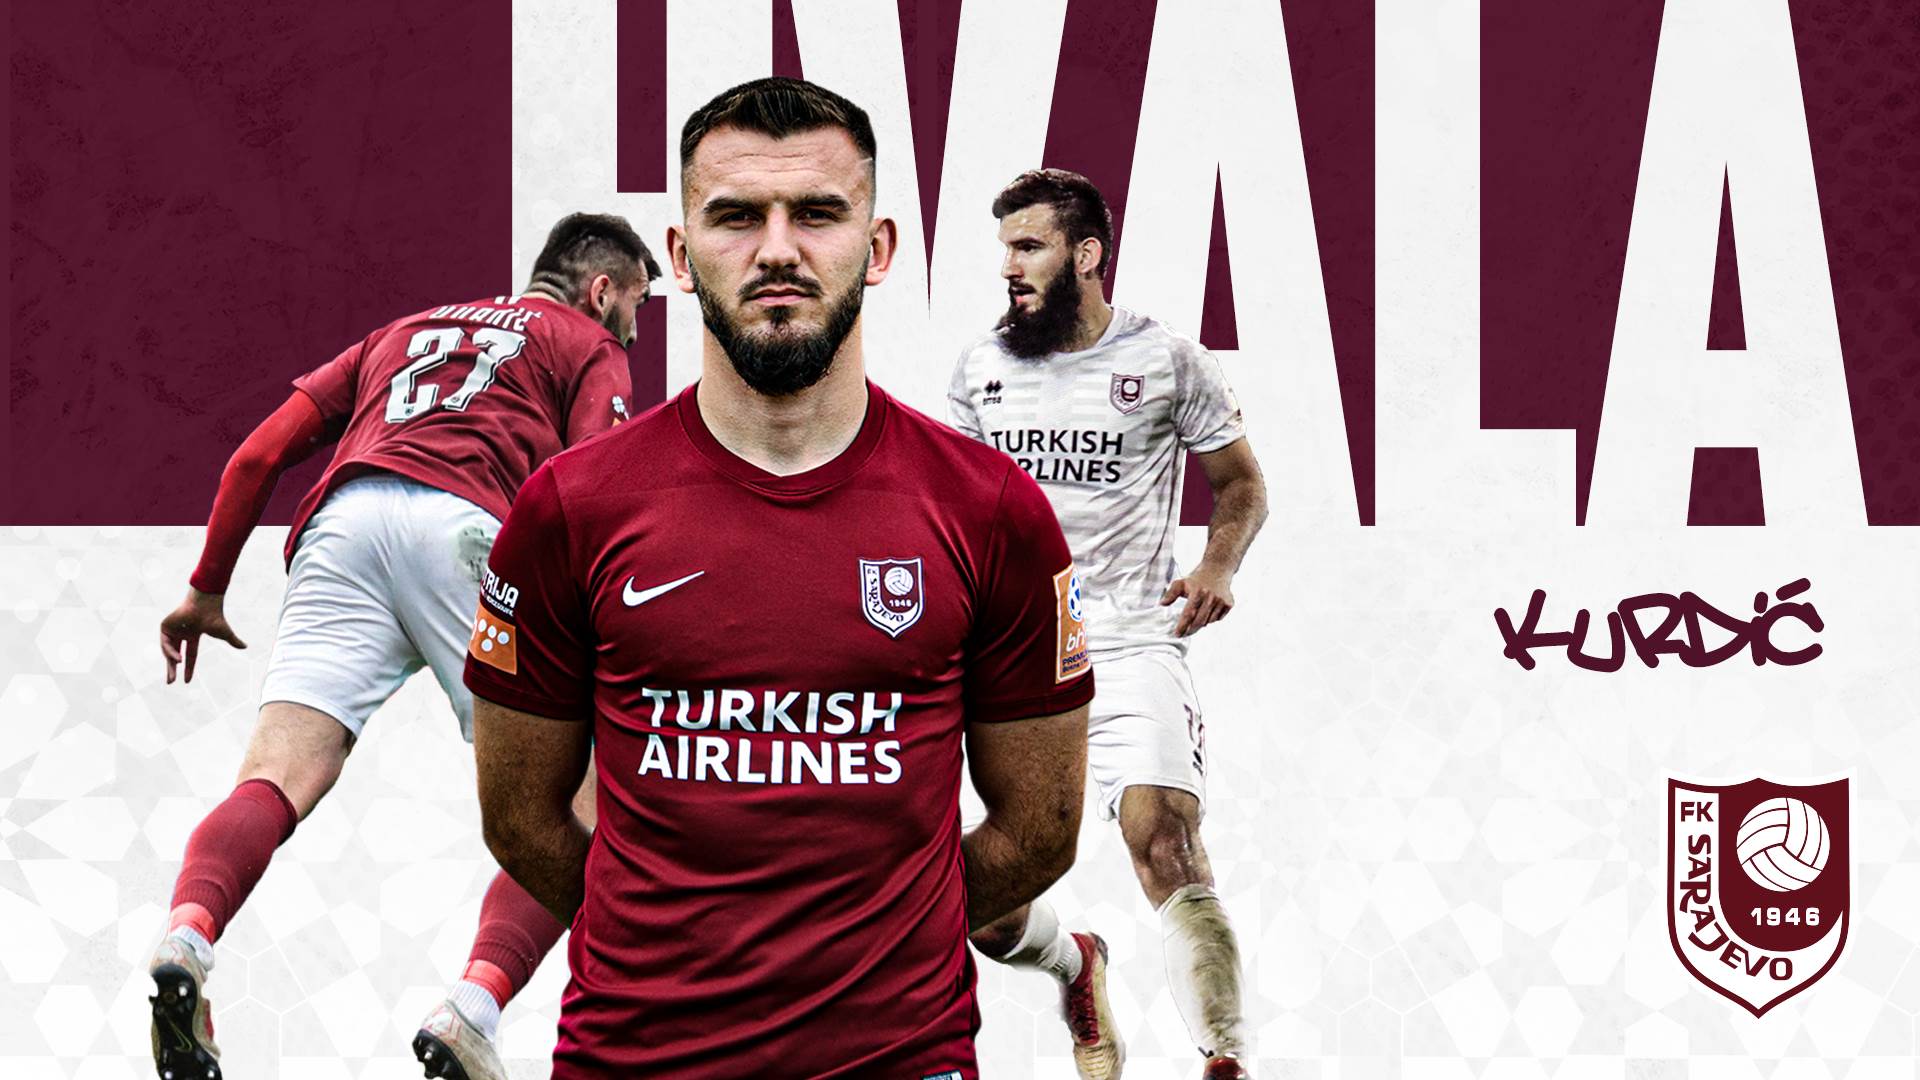  FK Sarajevo-Numan Kurdic 